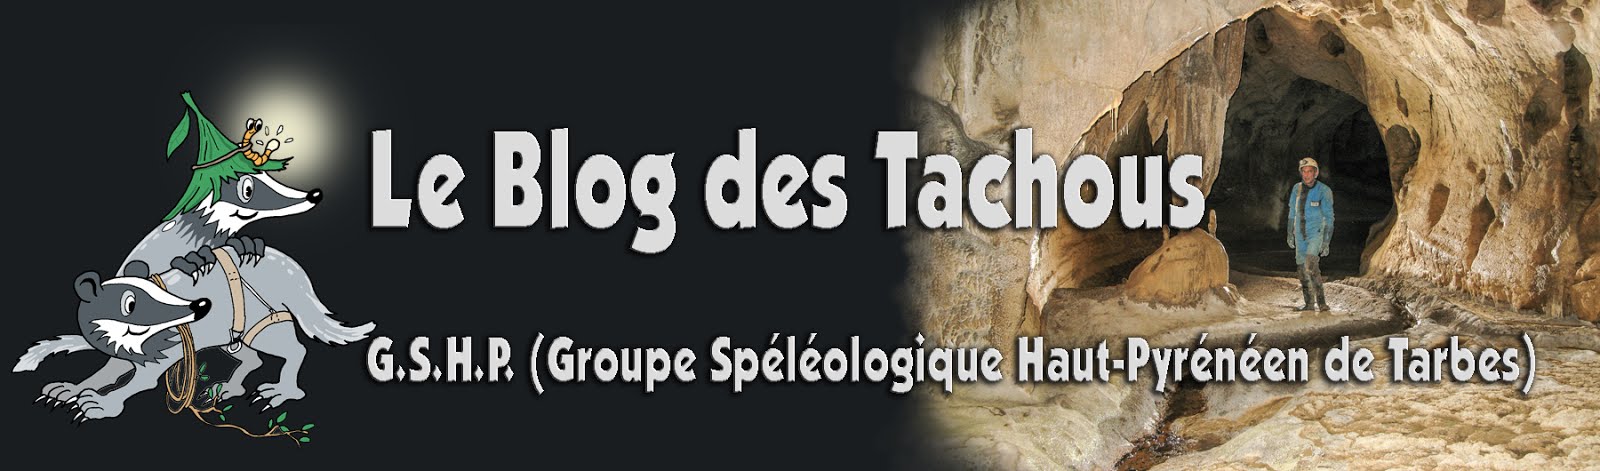 Le Blog des Tachous